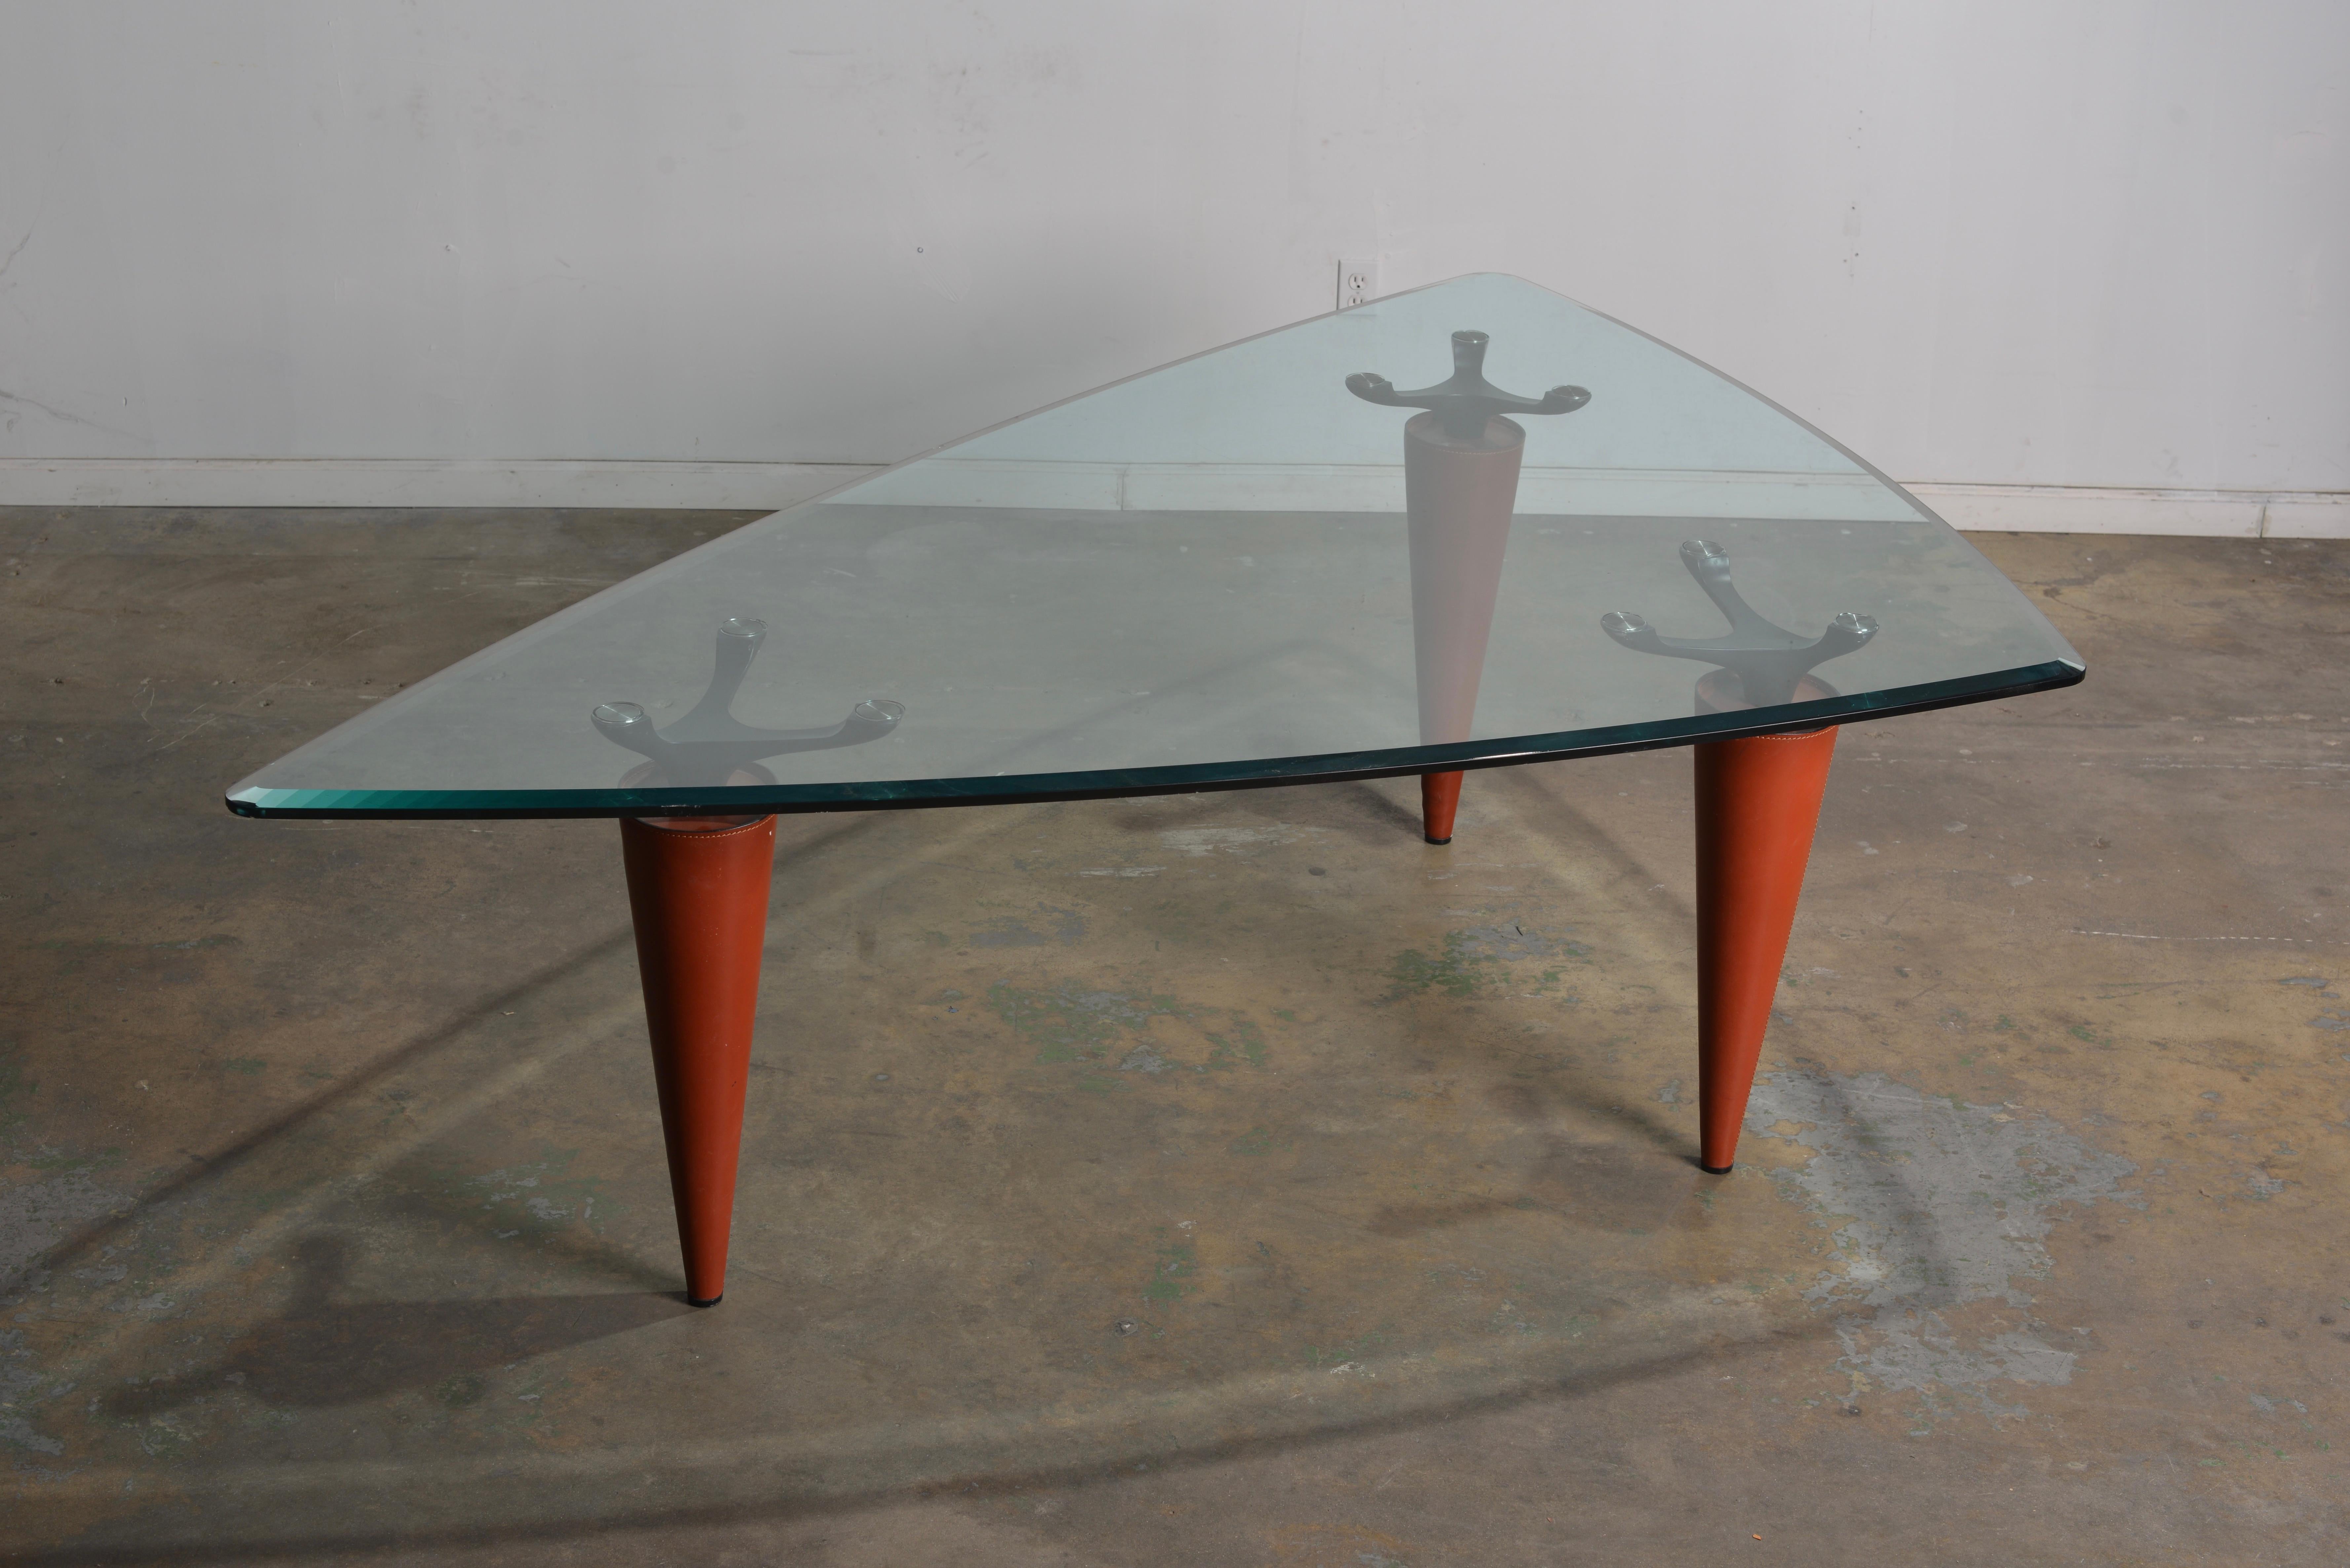  Isao Hosoe Oskar 705 Scalene Triangular Table by Cassina For Sale 8